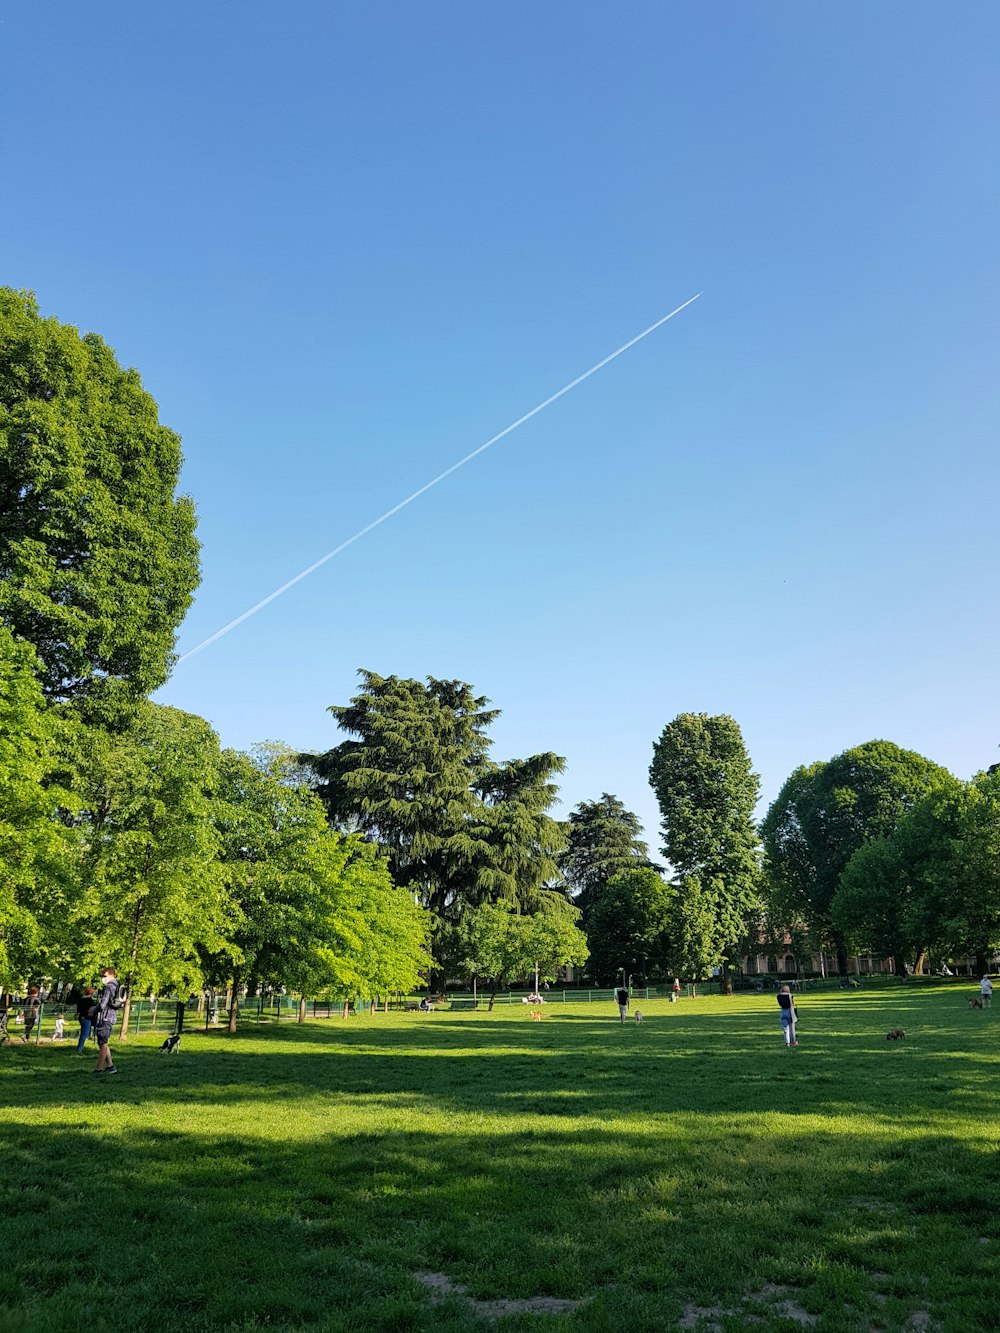 Menschen, die tagsüber auf einem grünen Grasfeld in der Nähe von grünen Bäumen unter blauem Himmel spazieren gehen